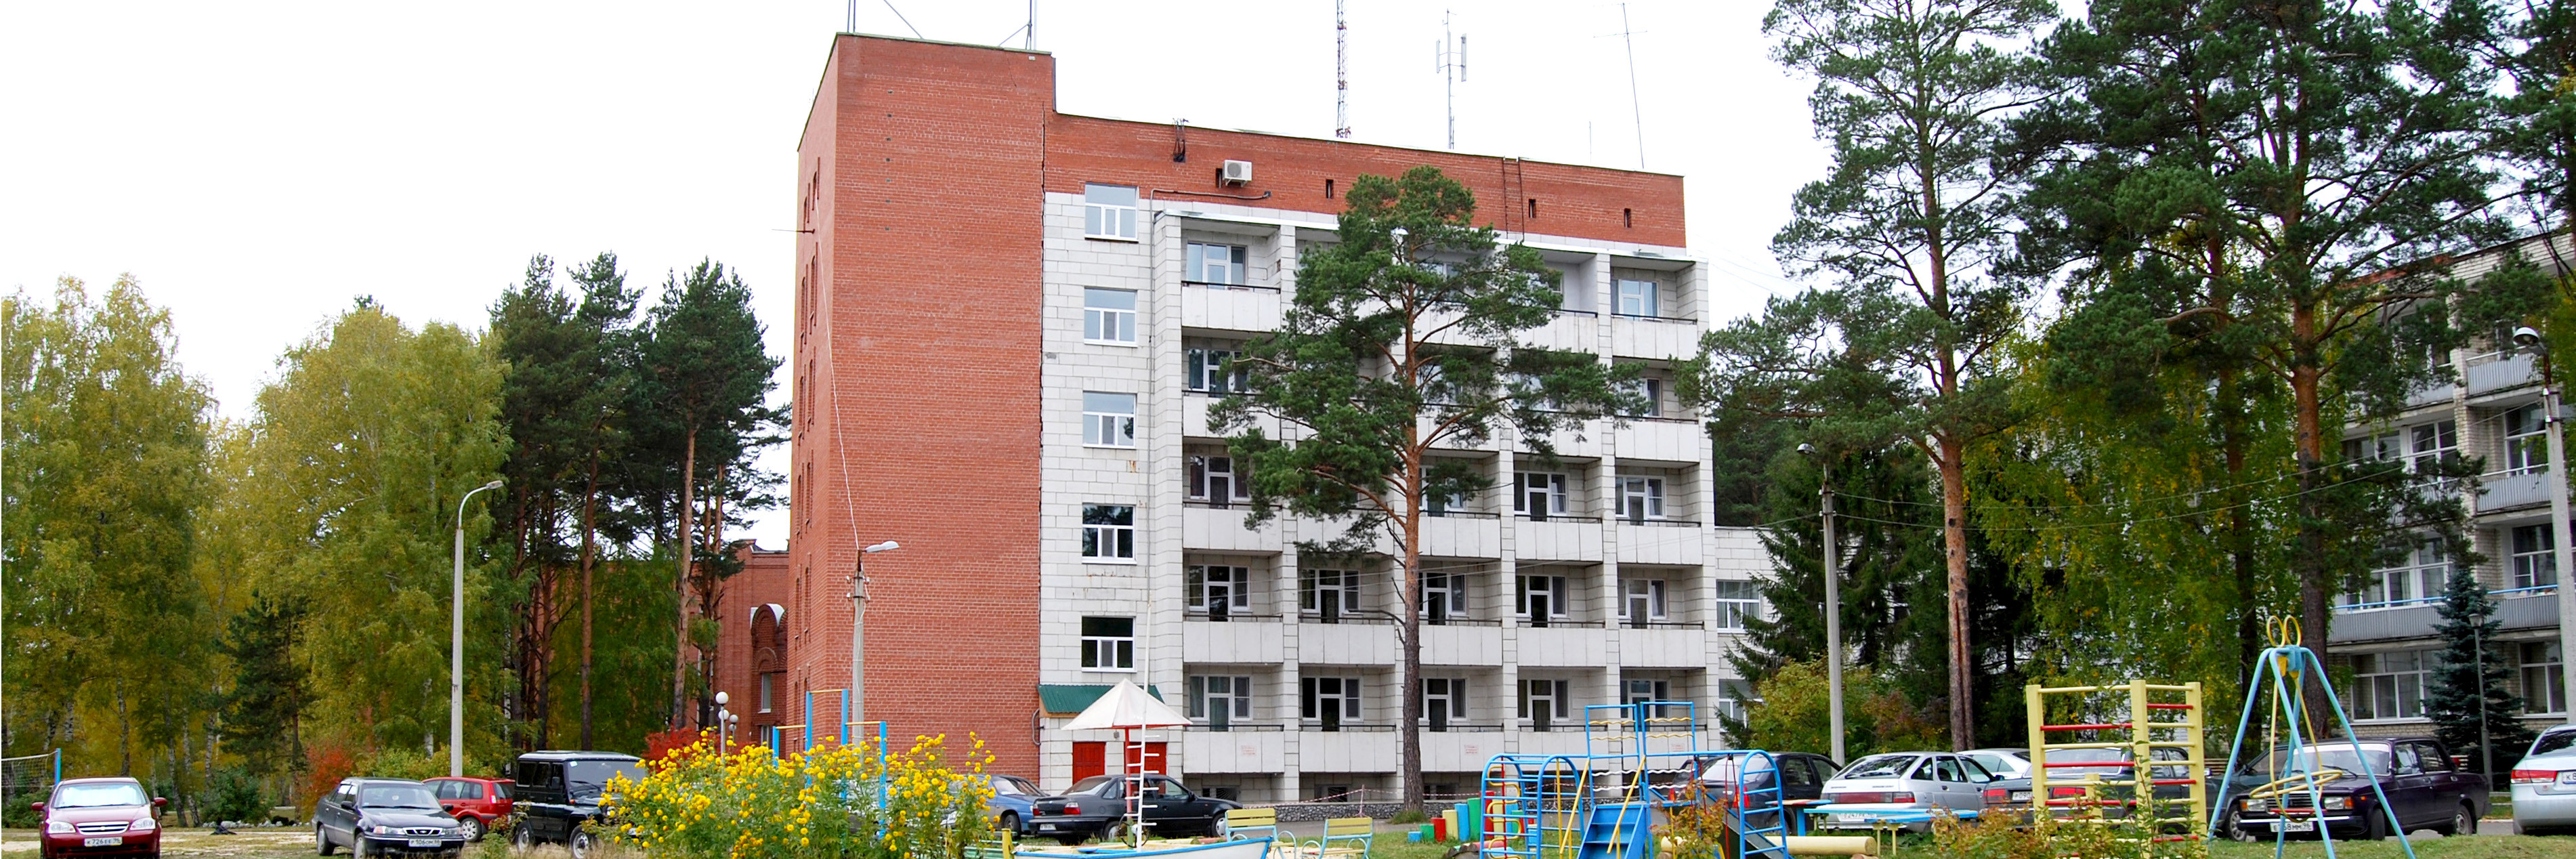 Сайт санатория липовка свердловской